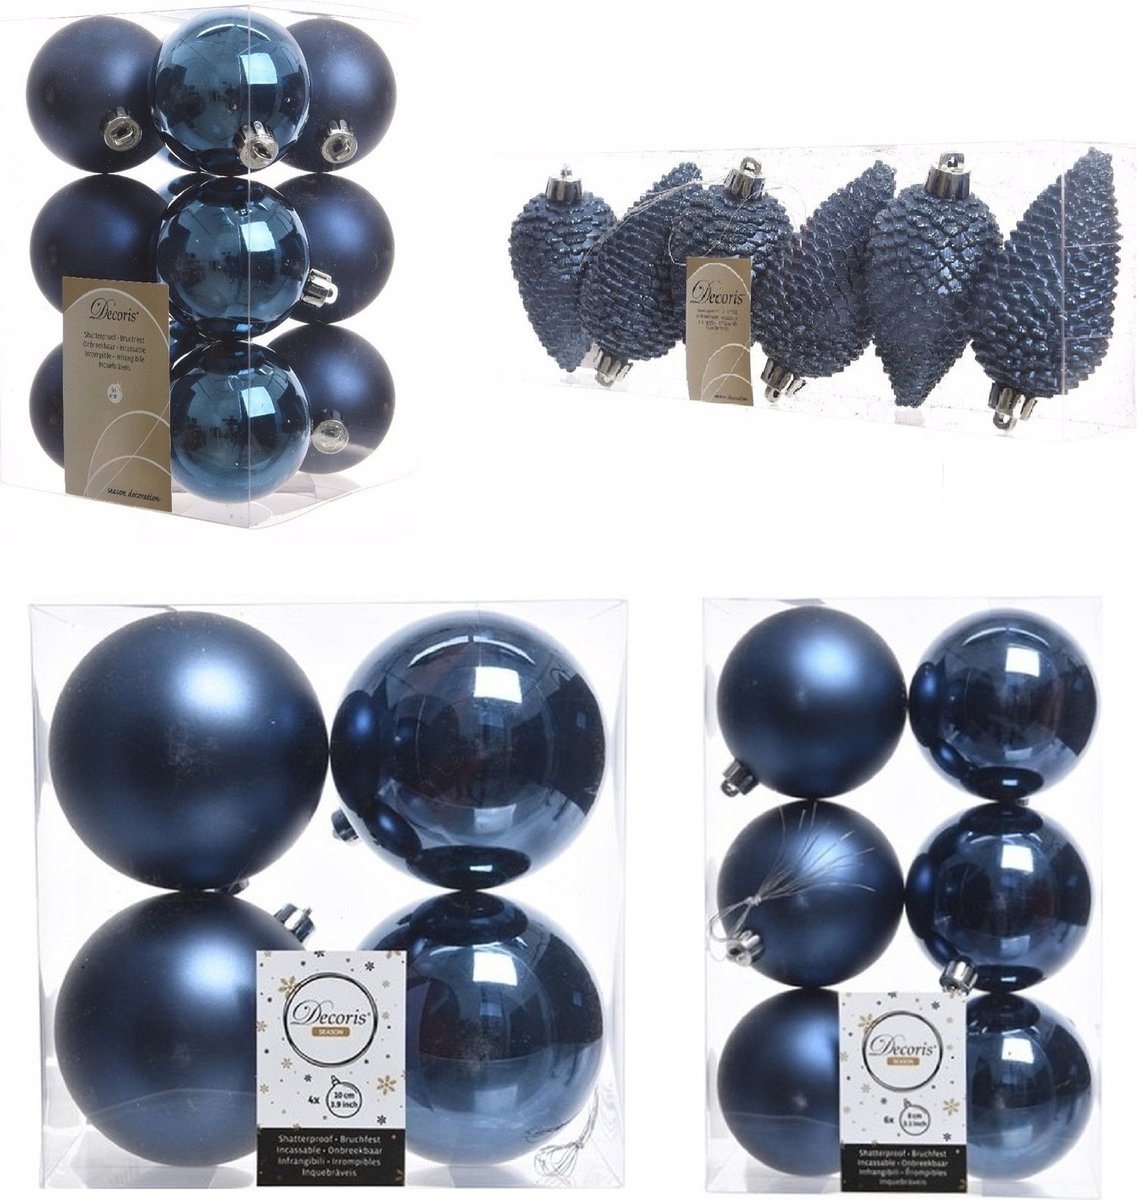 Kerstversiering kunststof kerstballen donkerblauw 6-8-10 cm pakket van 50x stuks - Kerstboomversiering